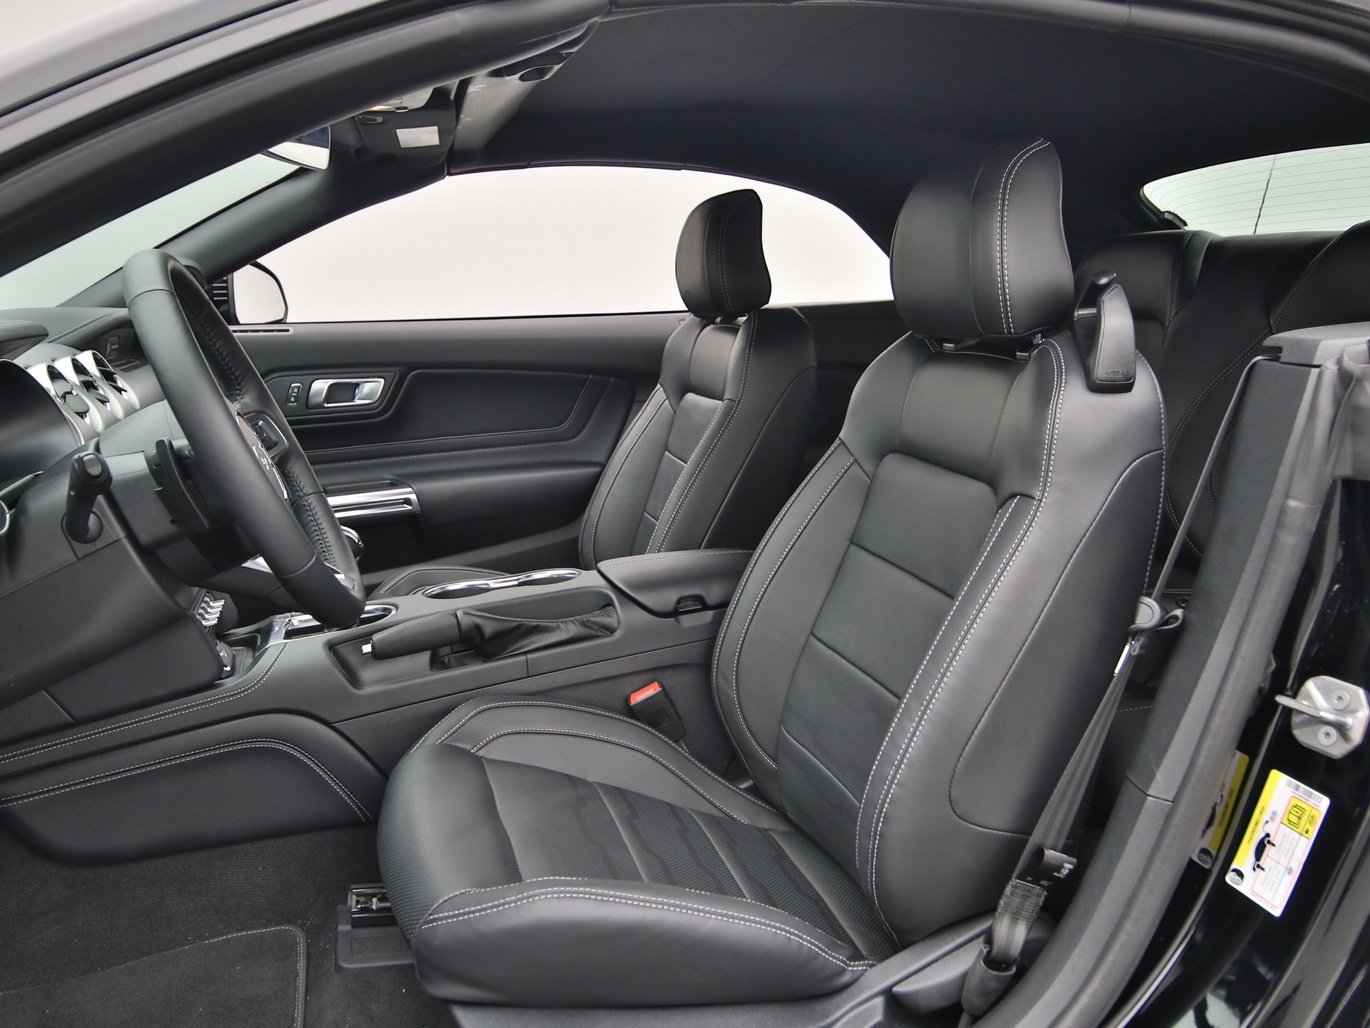  Ford Mustang GT Cabrio V8 450PS Aut. / Premium 4 in Iridium Schwarz 